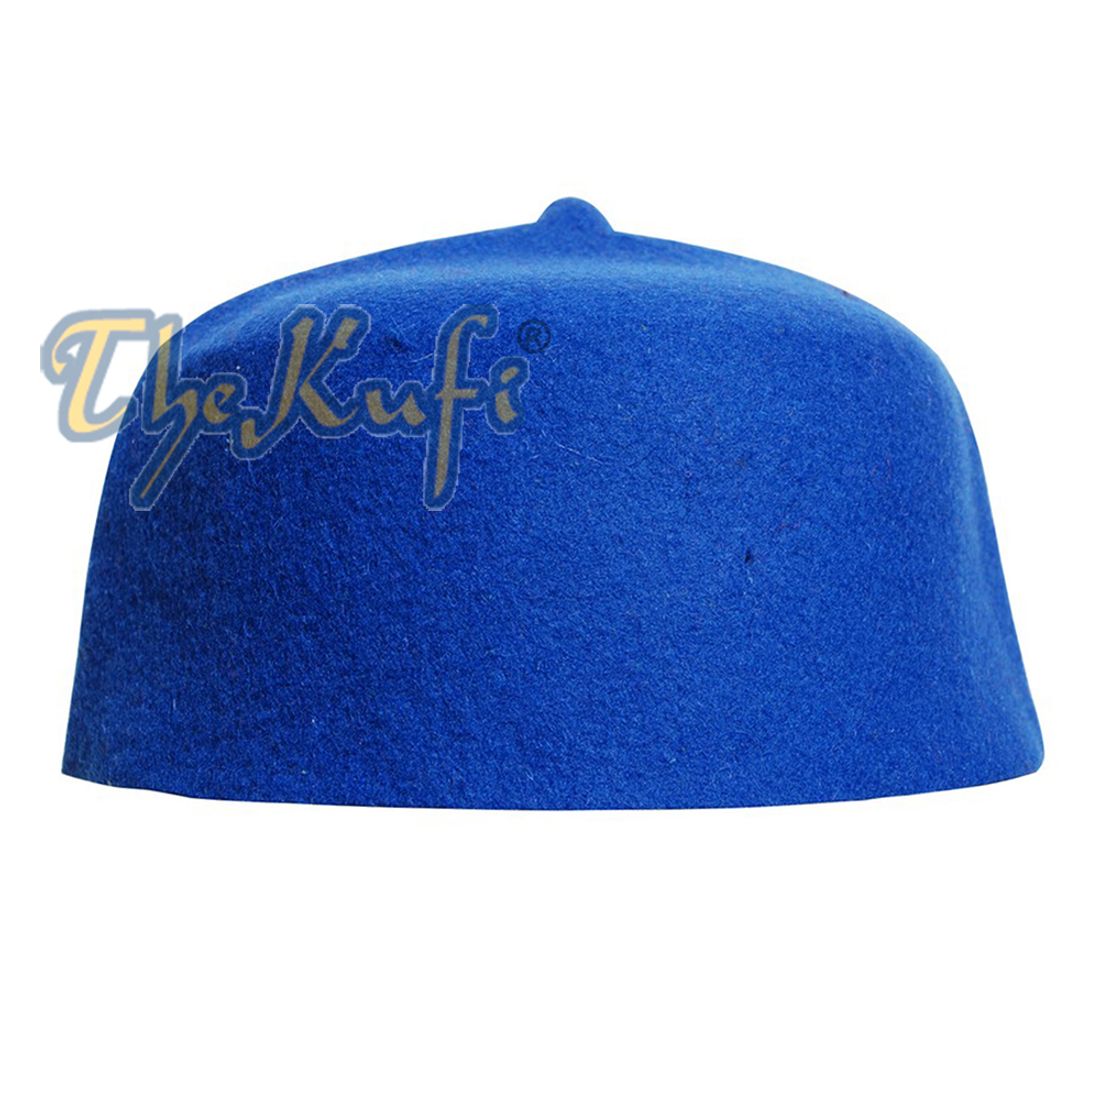 Blue Felt Wool Fez Hat with Tip Kufi Prayer Cap